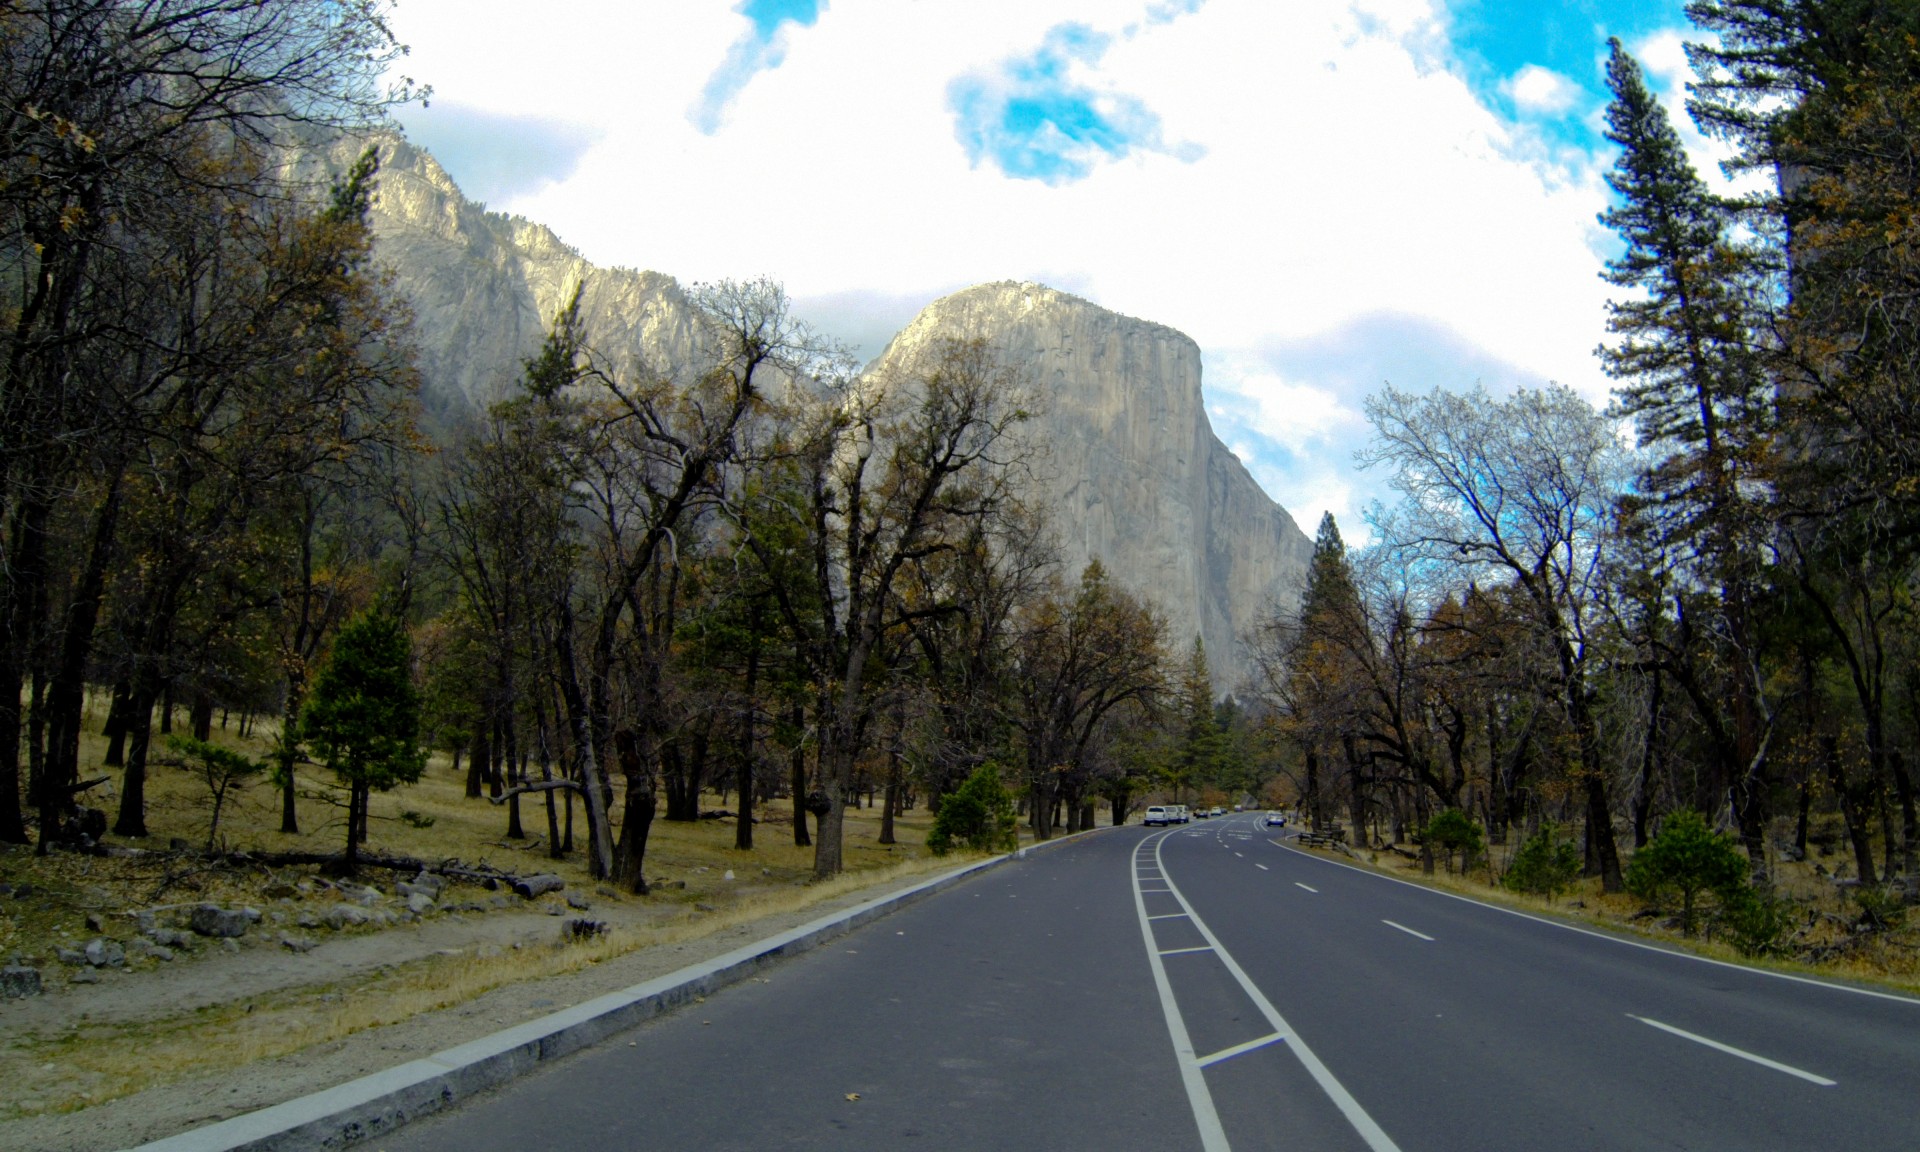 Entering Yosemite